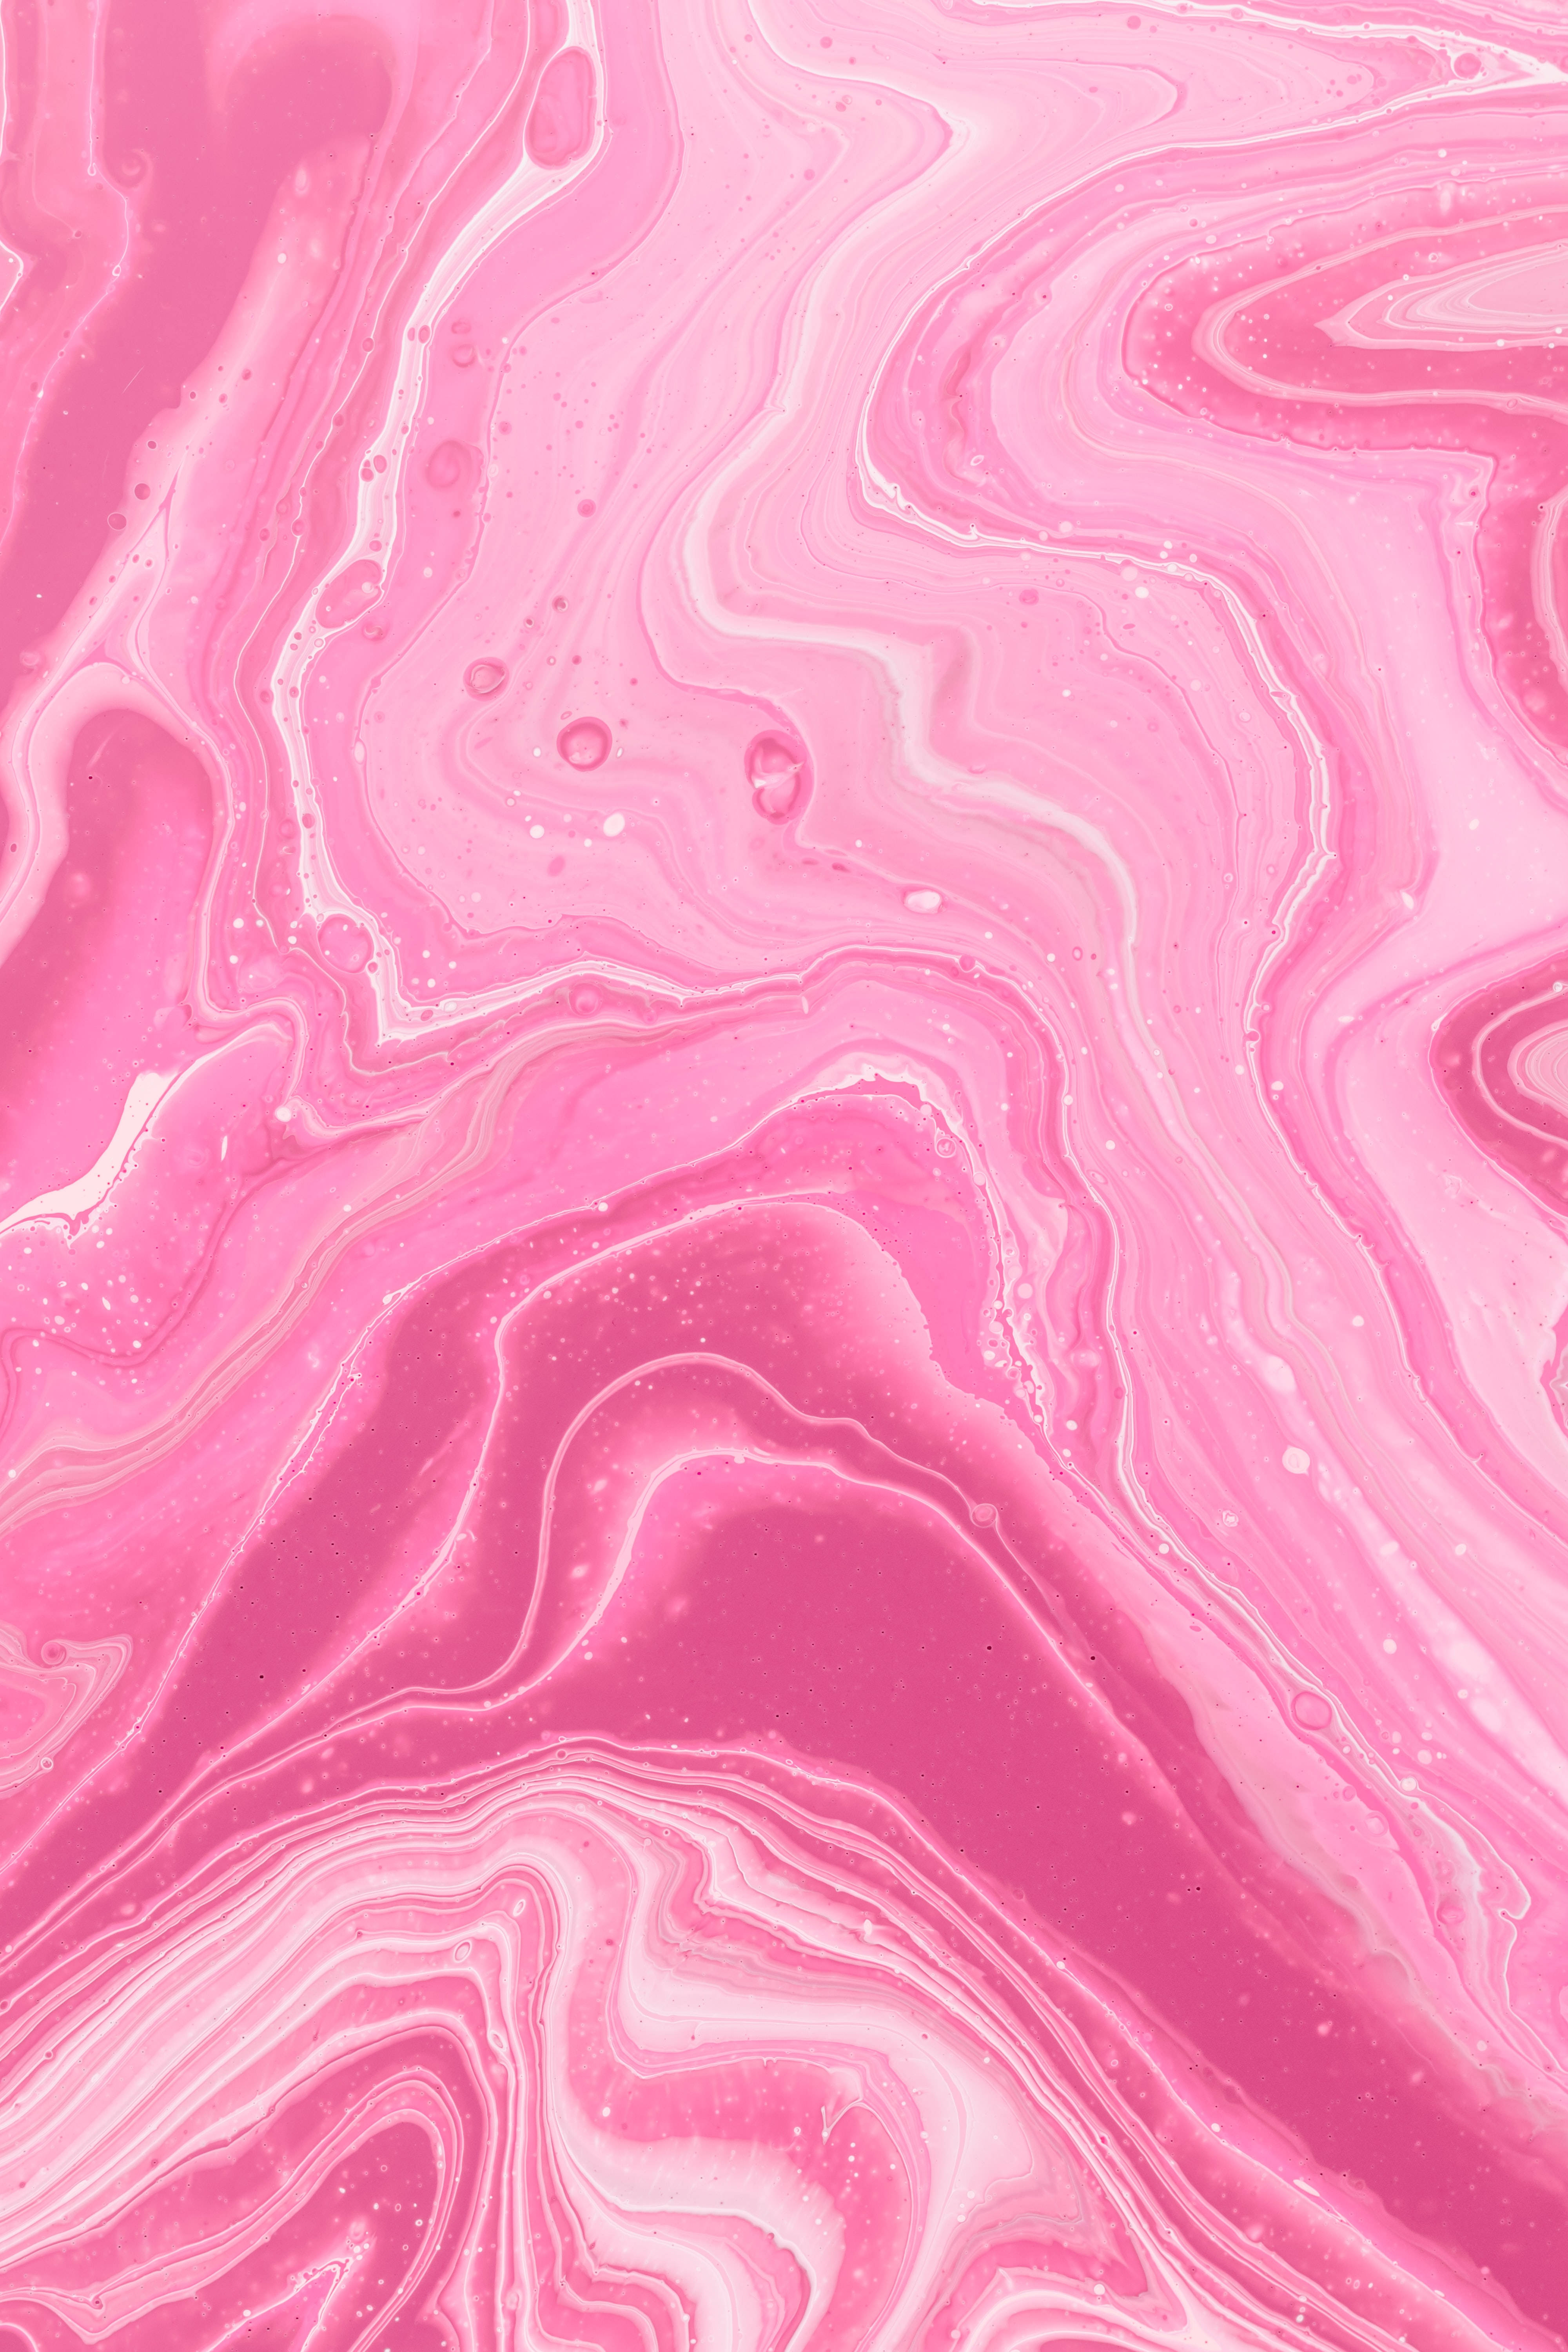 Fundode Tela De Mármore Pink Estético Com Padrão Espiral Em Resolução 4k. Papel de Parede